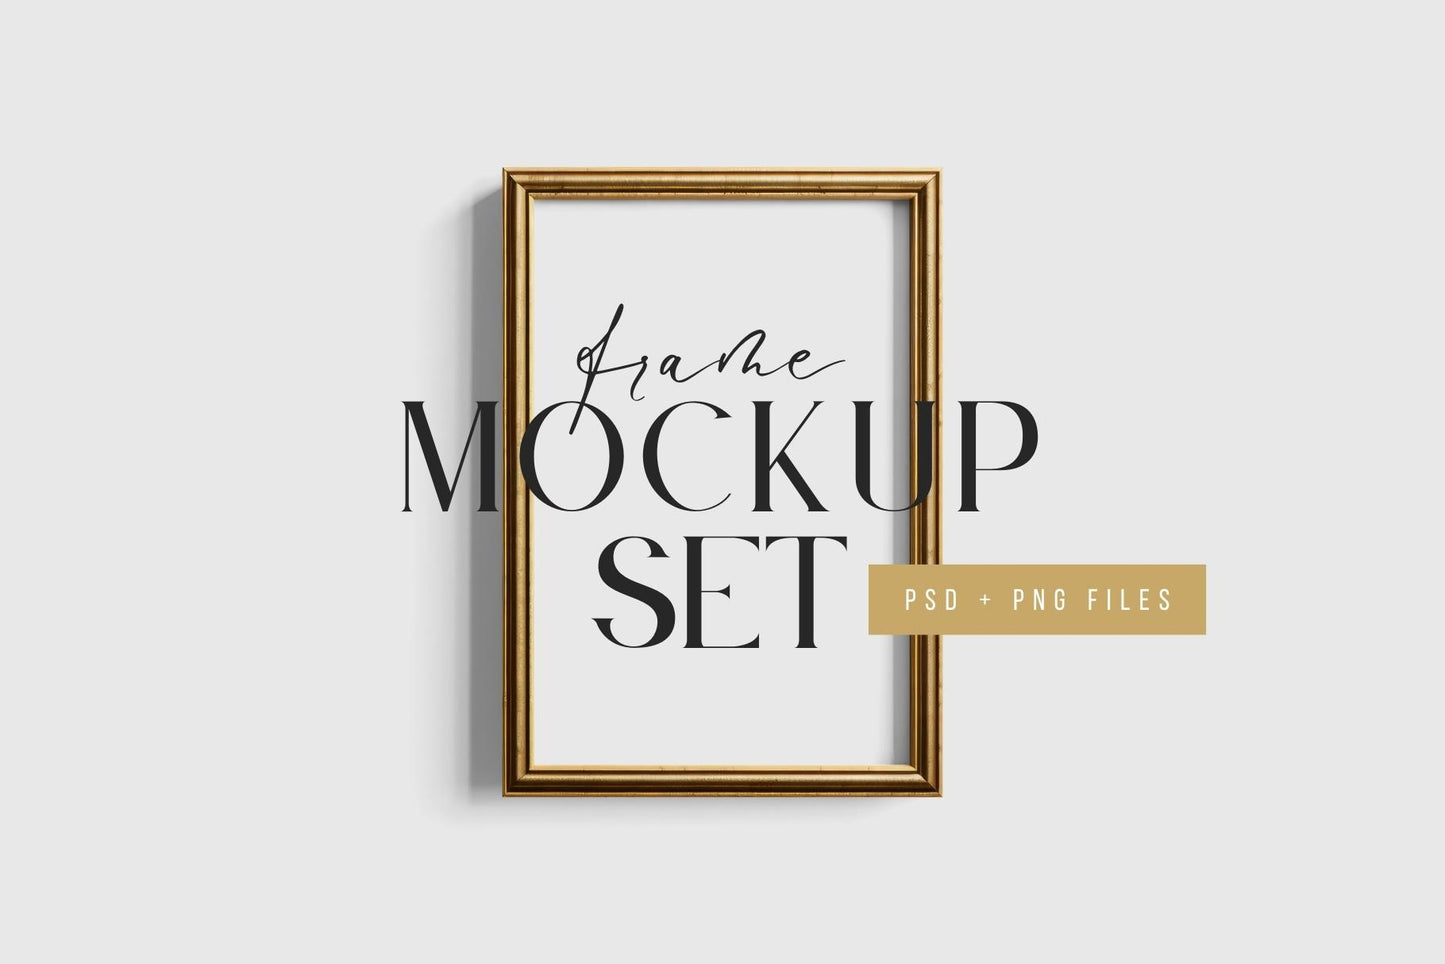 Metallic Frame Mockup Set of 2 Vertical Frames 2:3 | Vintage Gold Frame Mockup Set | PSD Template + Transparent PNG Files